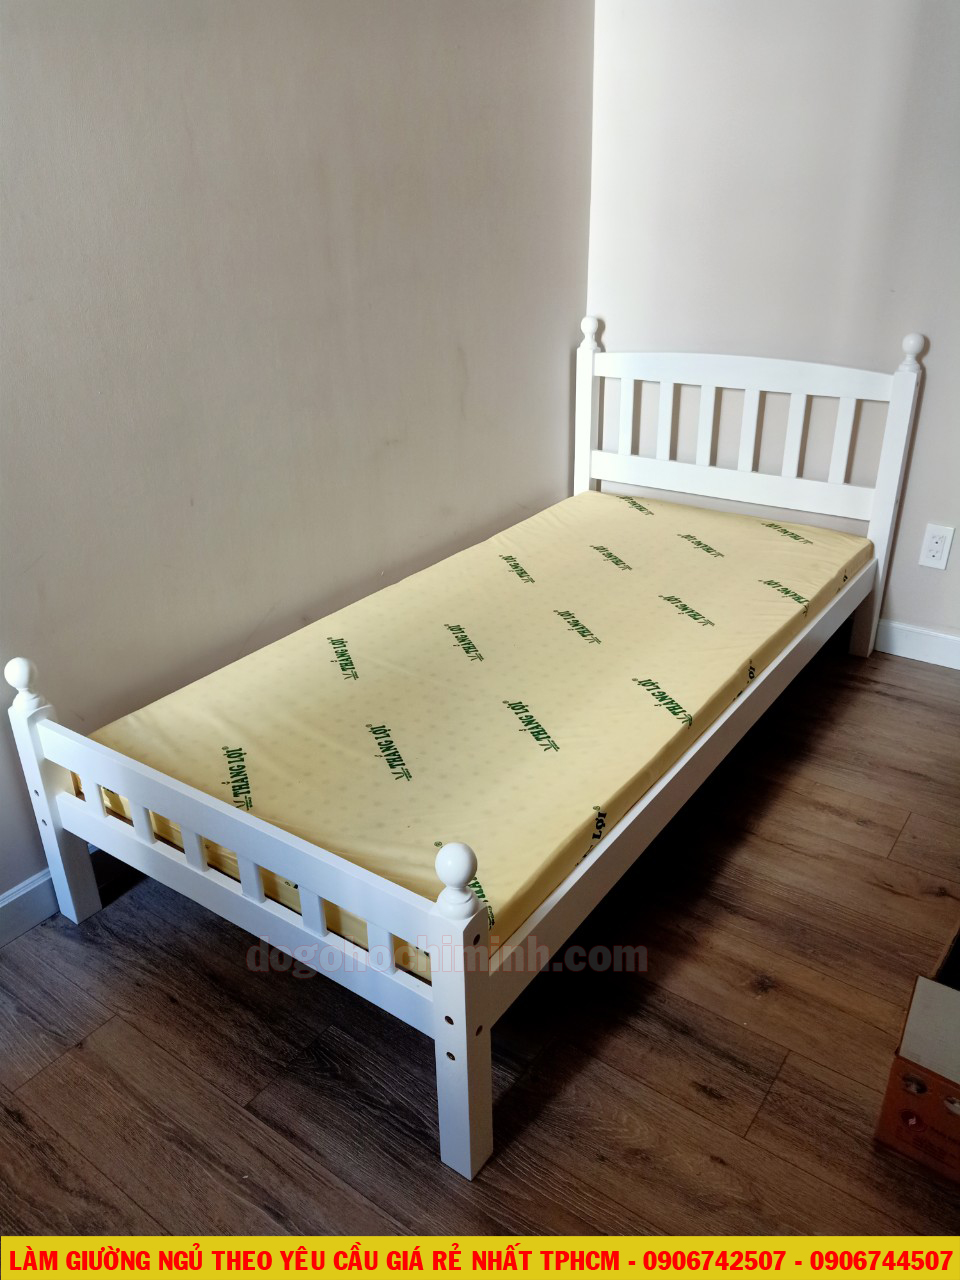 Mẫu giường đơn Benley giá rẻ đẹp bán chạy nhất TPHCM 2020